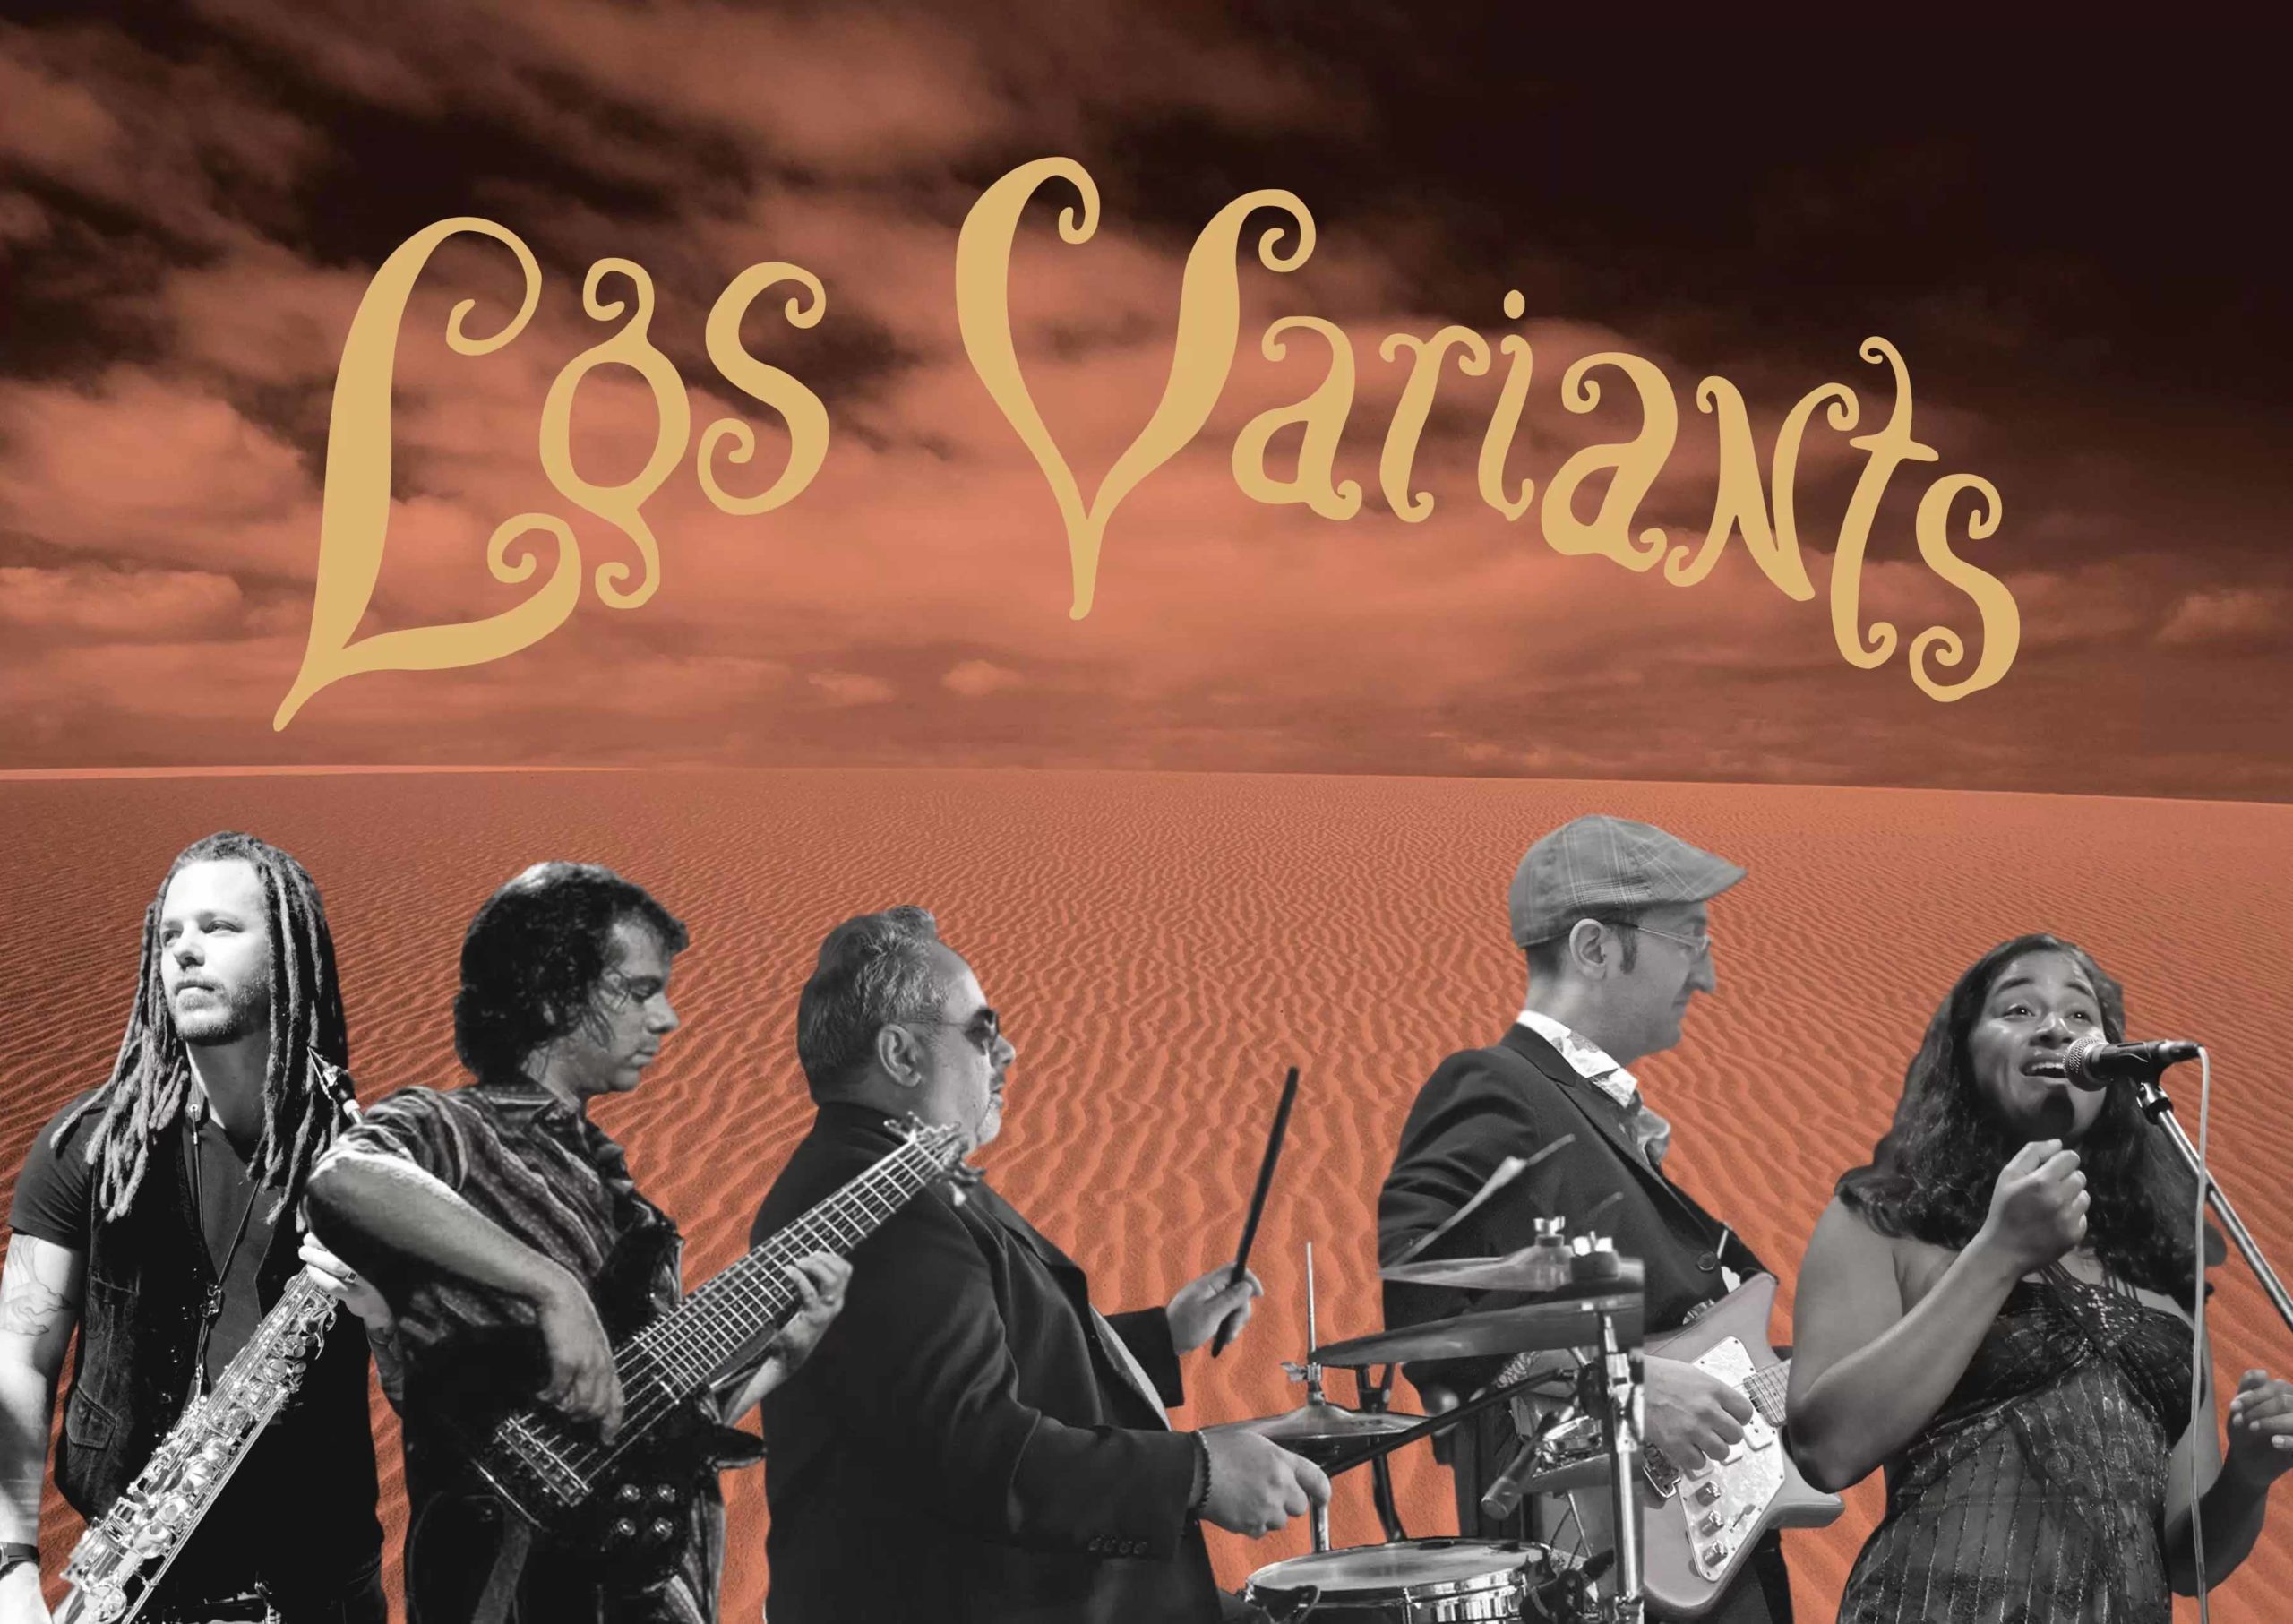 Los Variants Live at the Kodiak